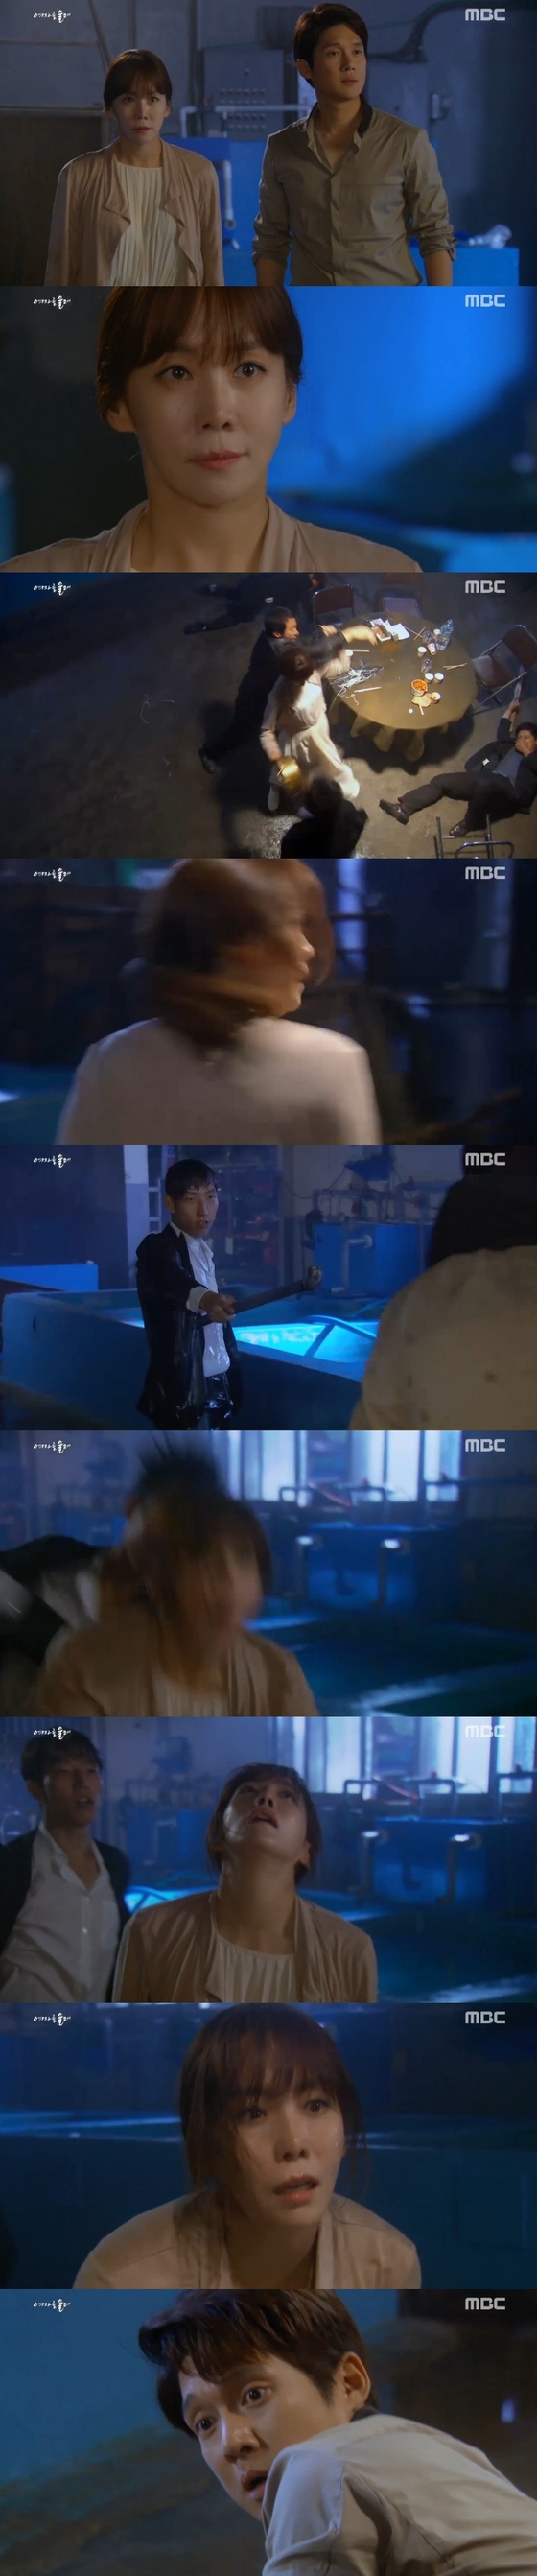 29일 저녁 8시45분 MBC 주말드라마 ´여자를 울려´ 39회가 방송됐다. © 뉴스1스타 / MBC ´여자를 울려´ 캡처